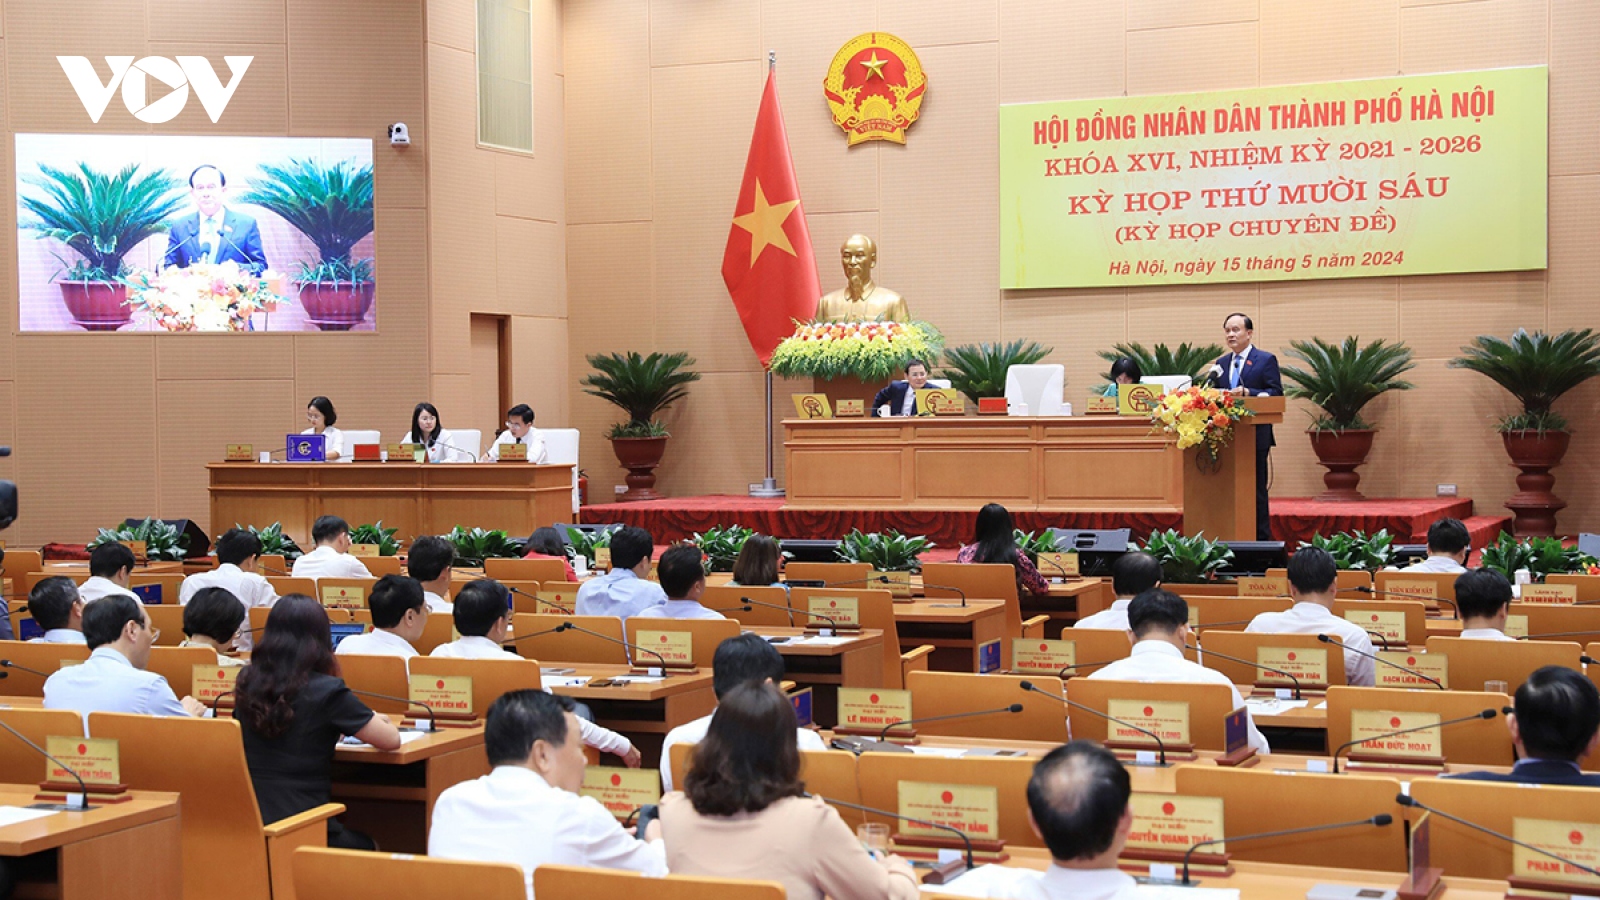 Hà Nội thông qua Đề án sắp xếp đơn vị hành chính, giữ nguyên quận Hoàn Kiếm